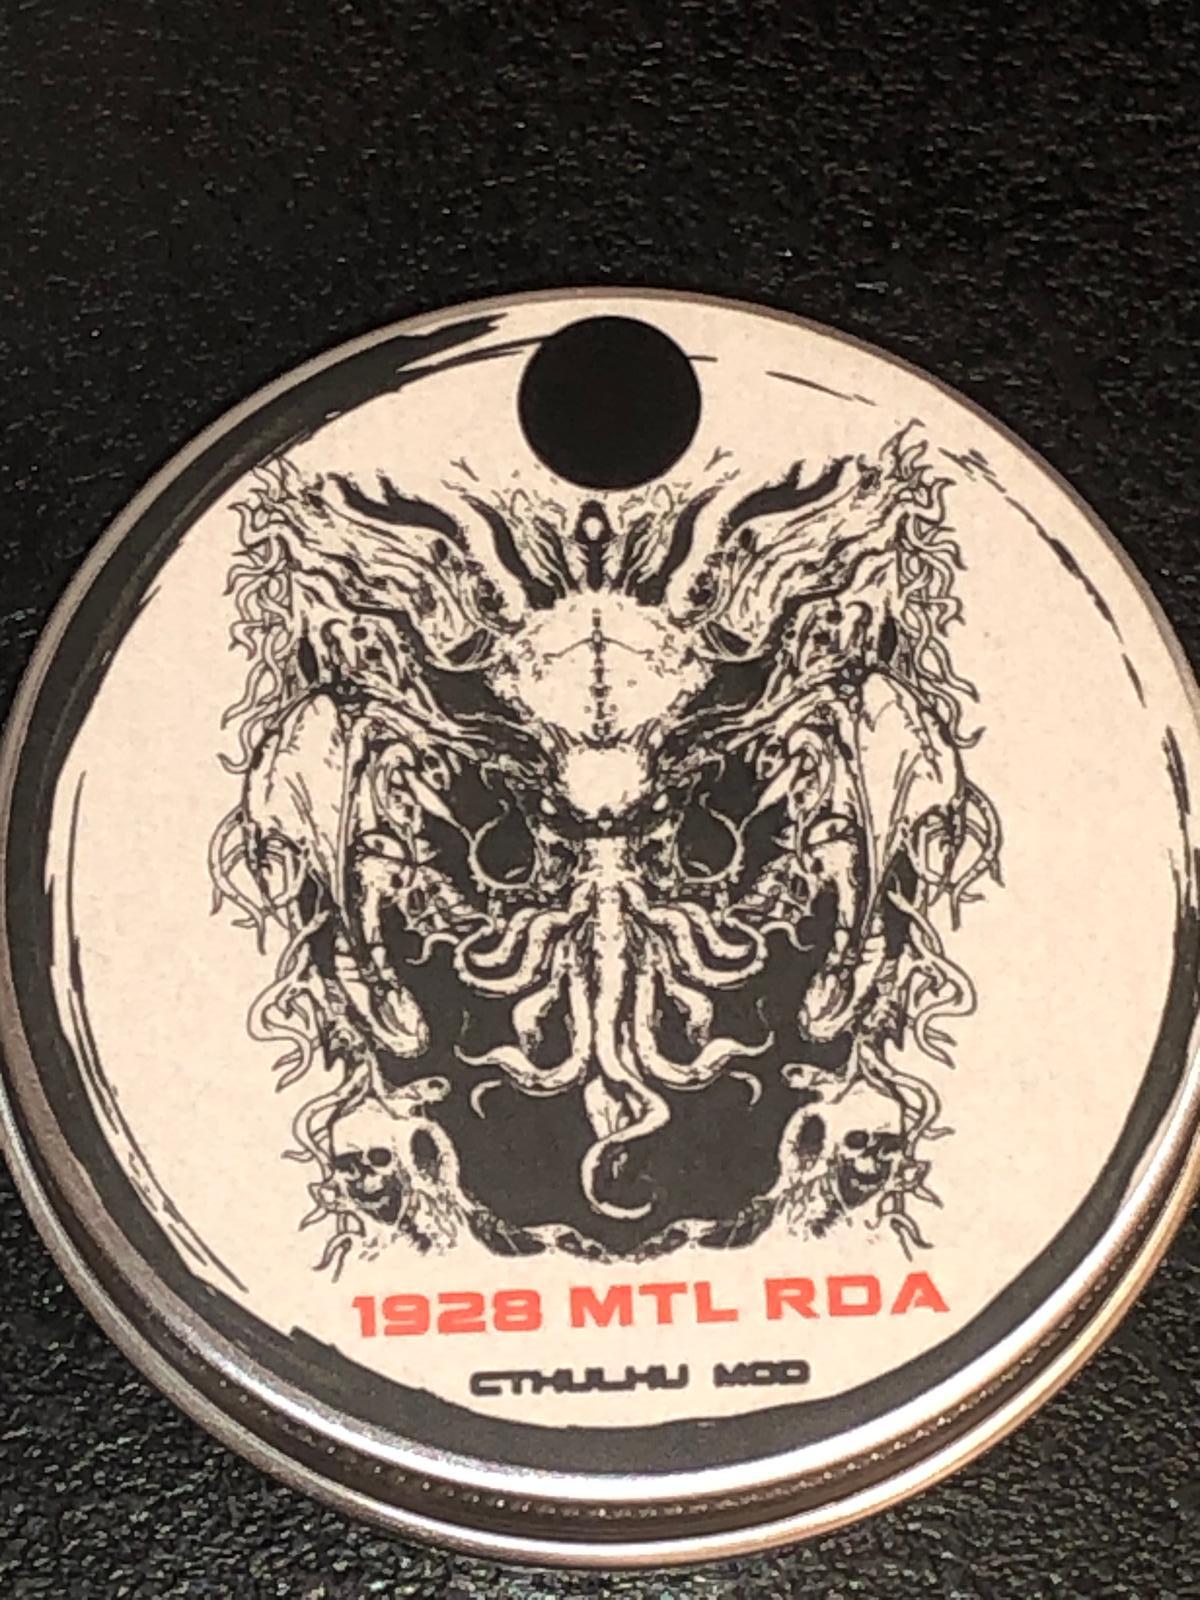 Cthulhu 1928 MTL RDA (Čierny), kompletné balenie - Lekáreň a zdravie